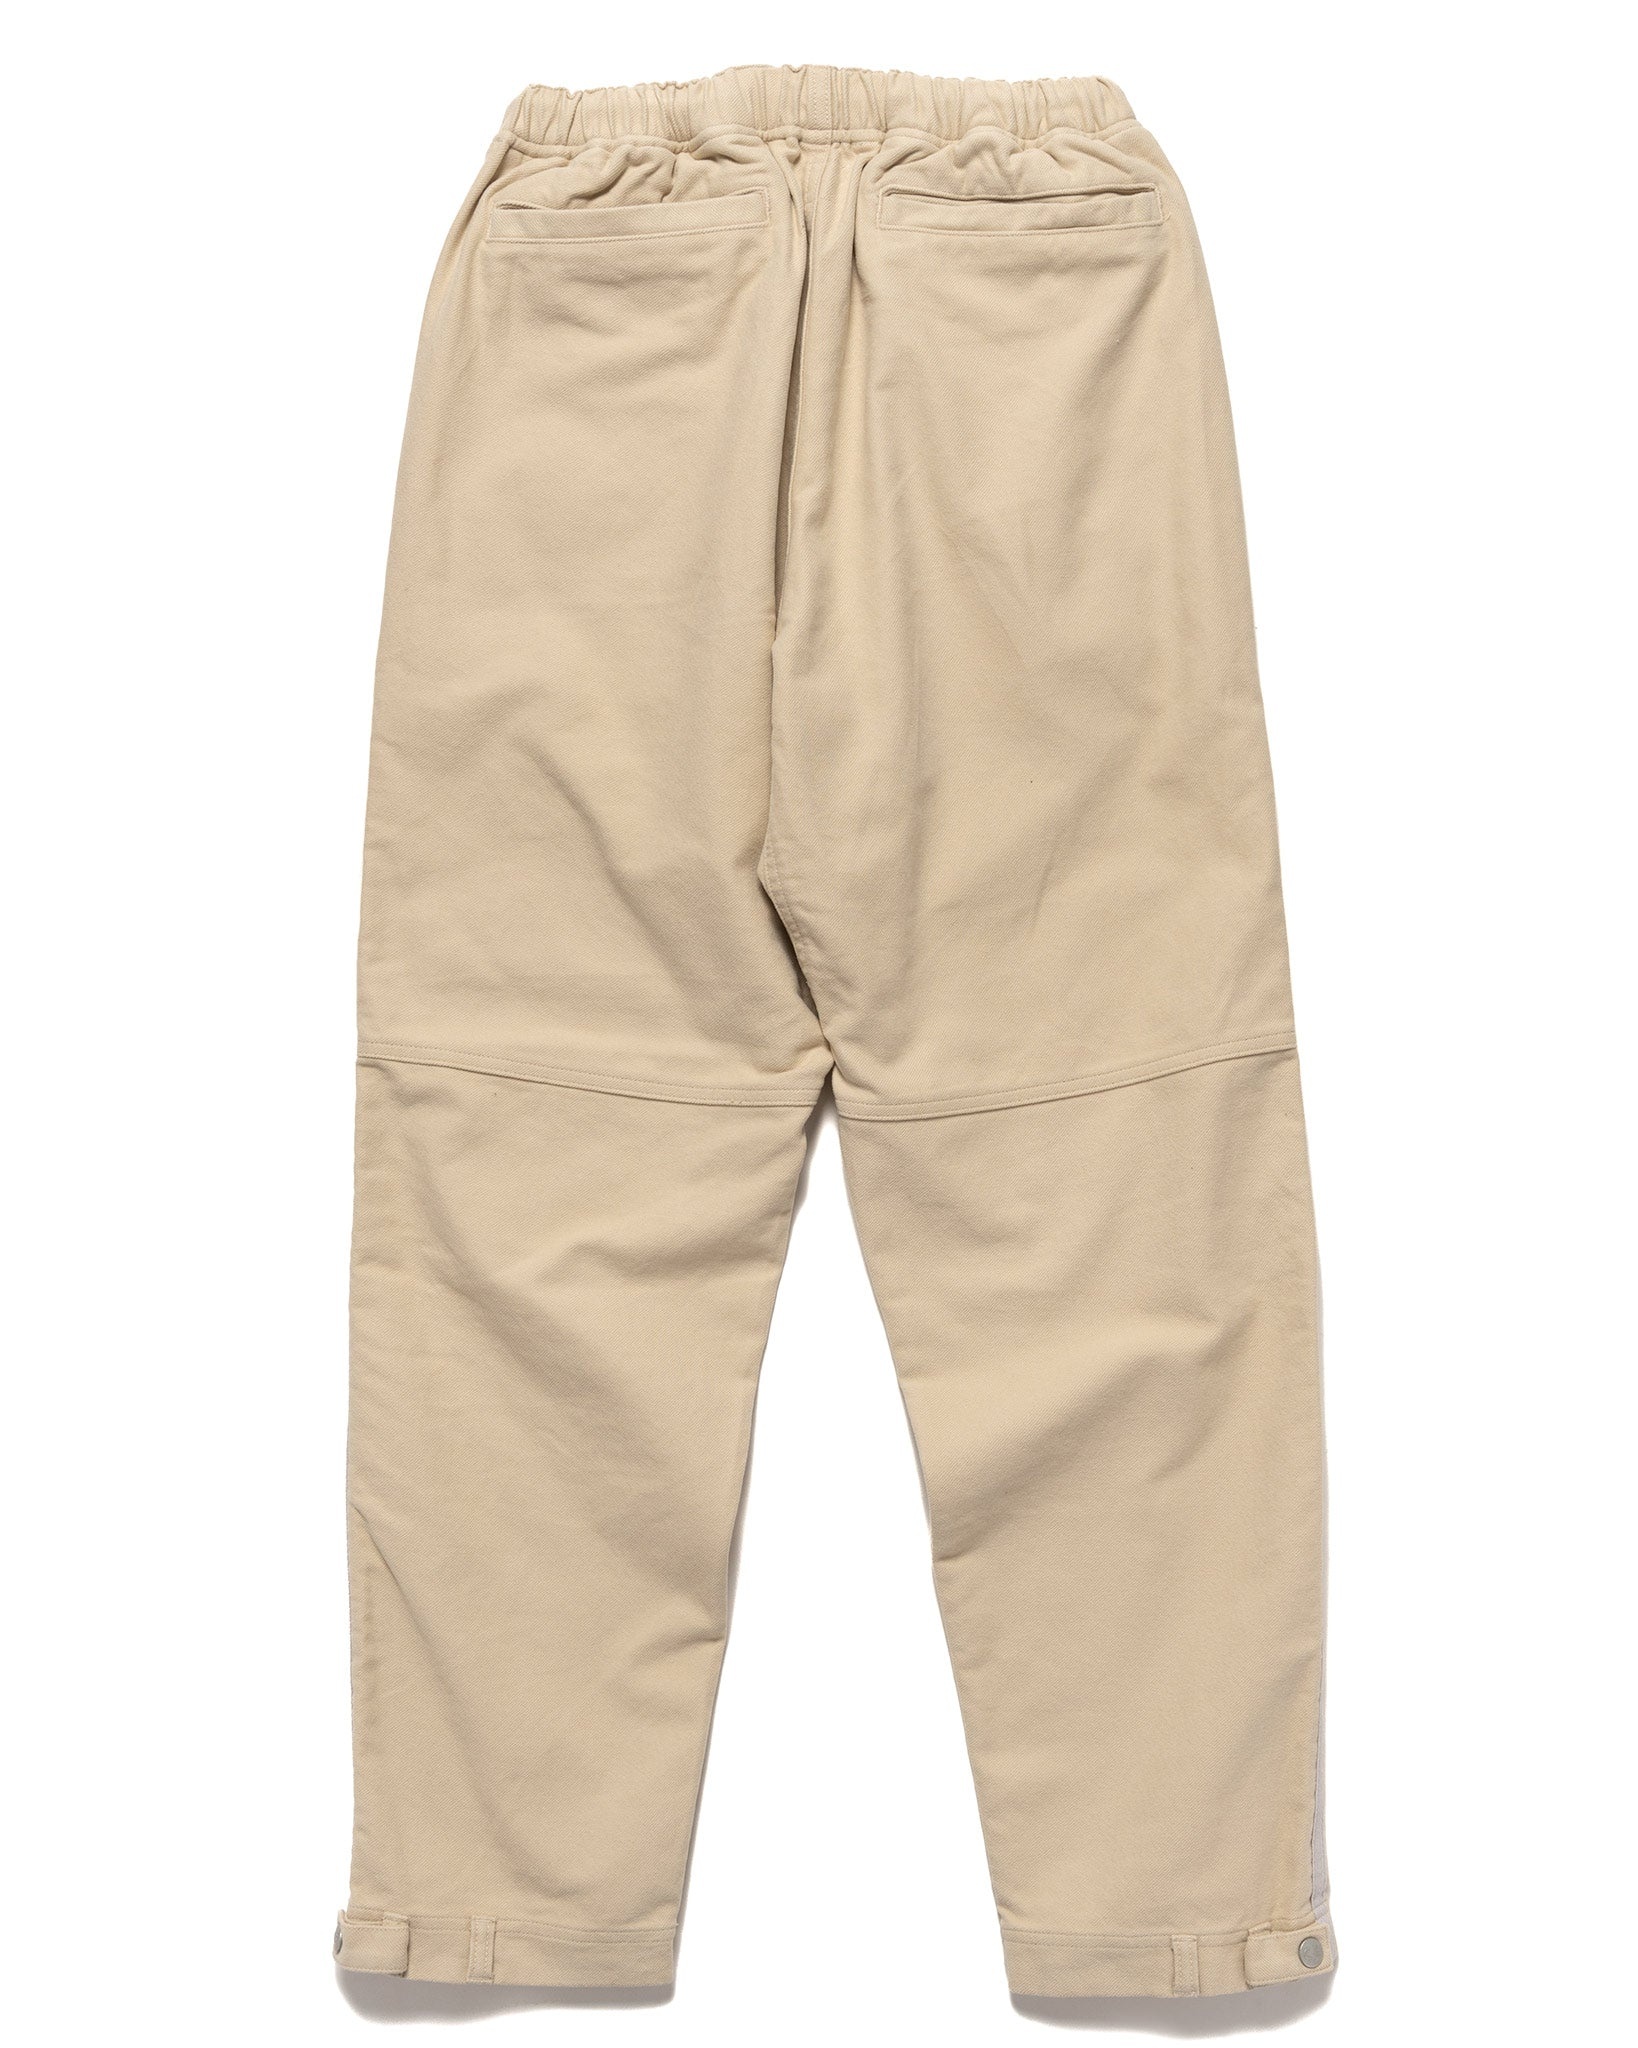 Cotton JMG Pants Beige - 5